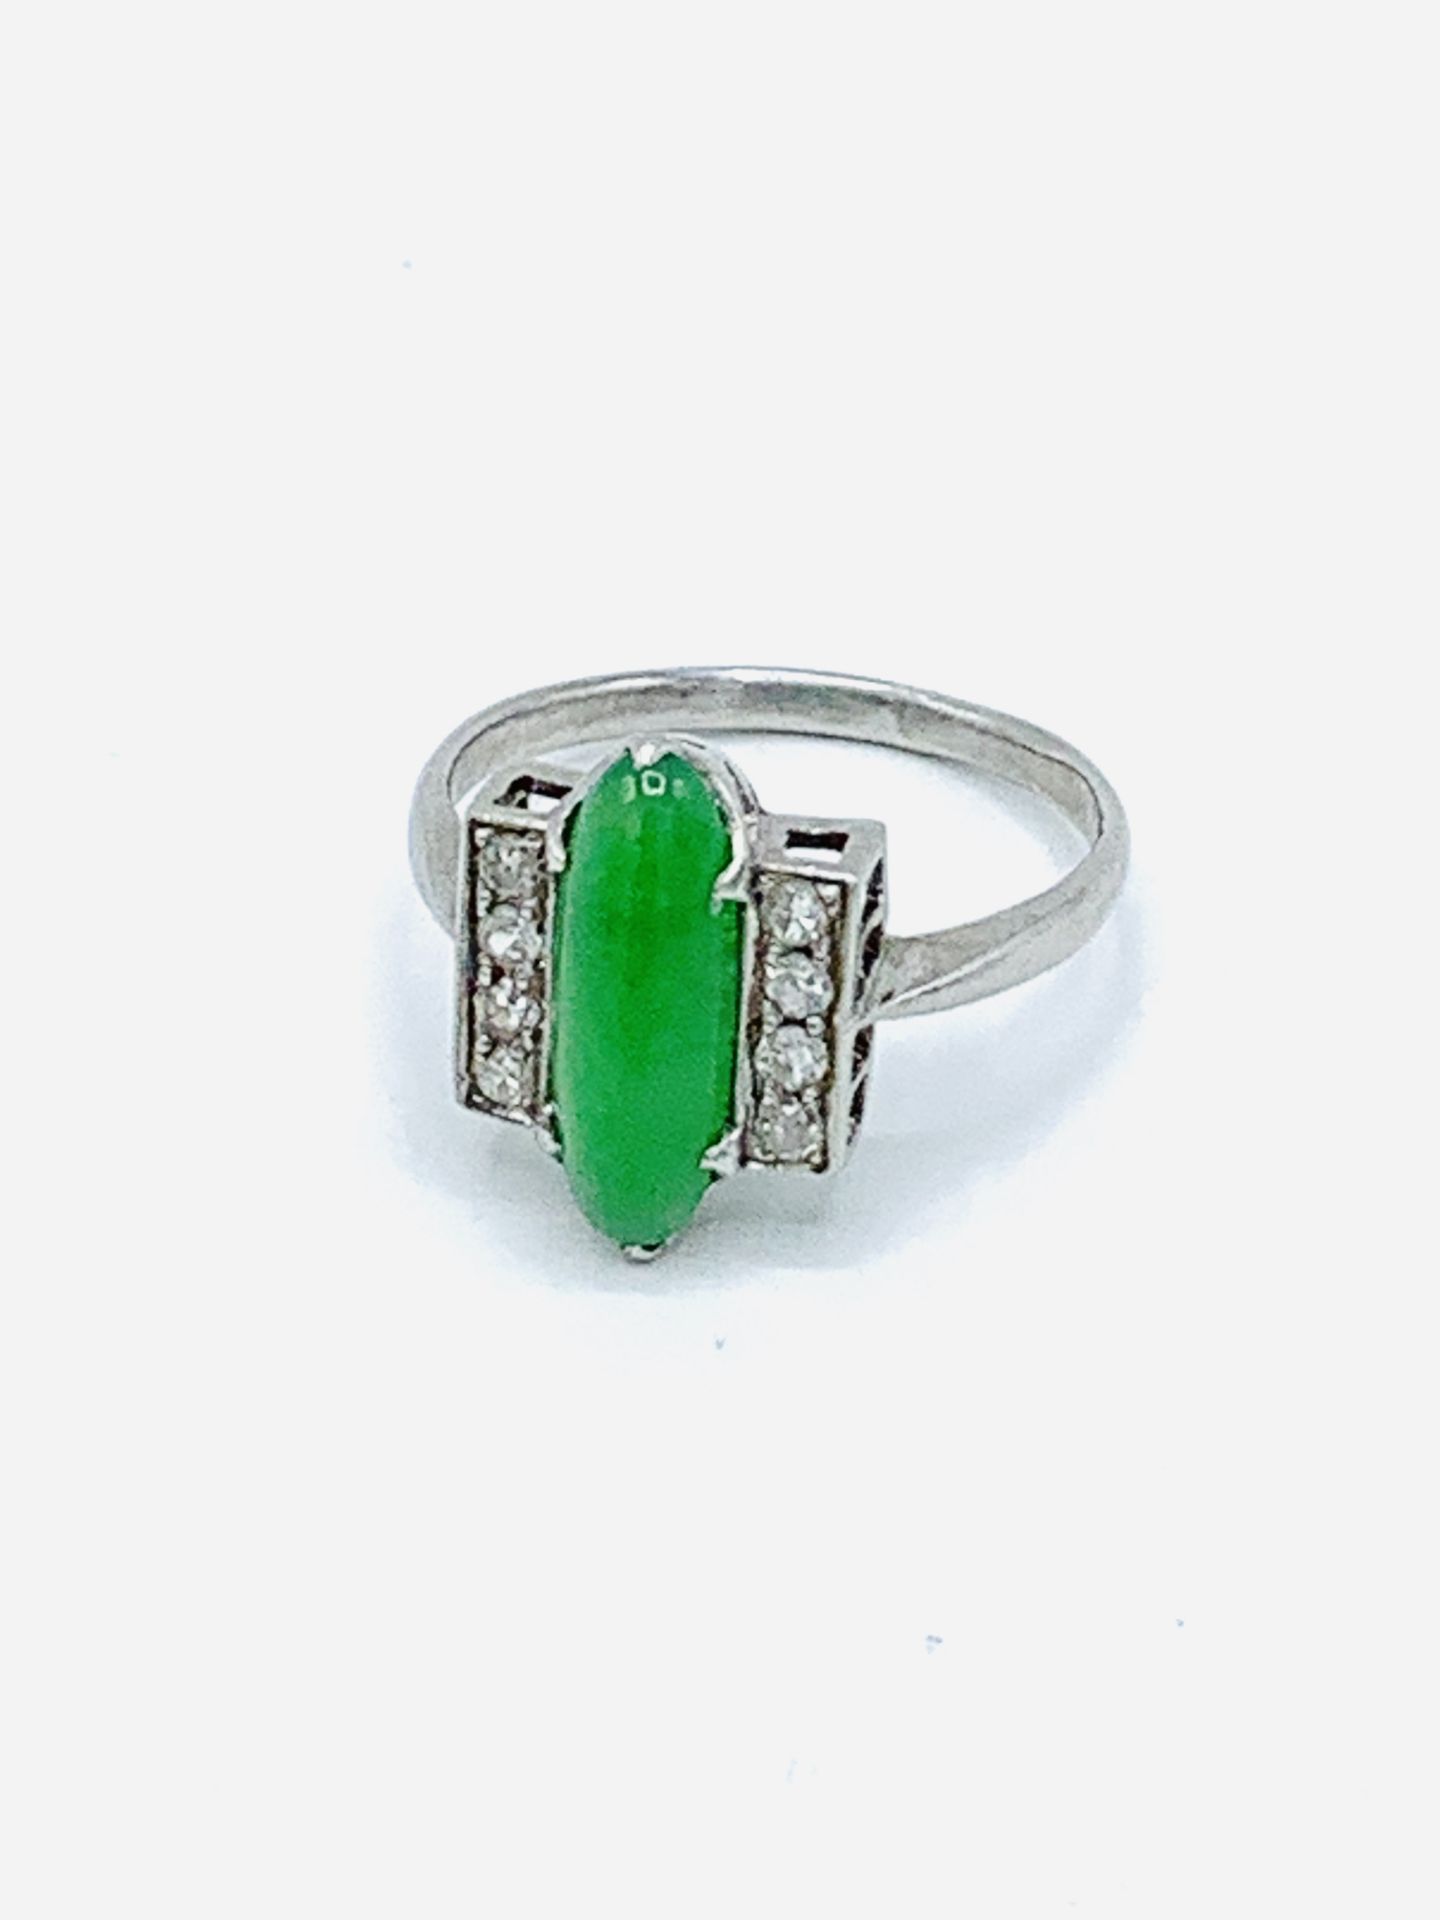 Jade and diamond ring.